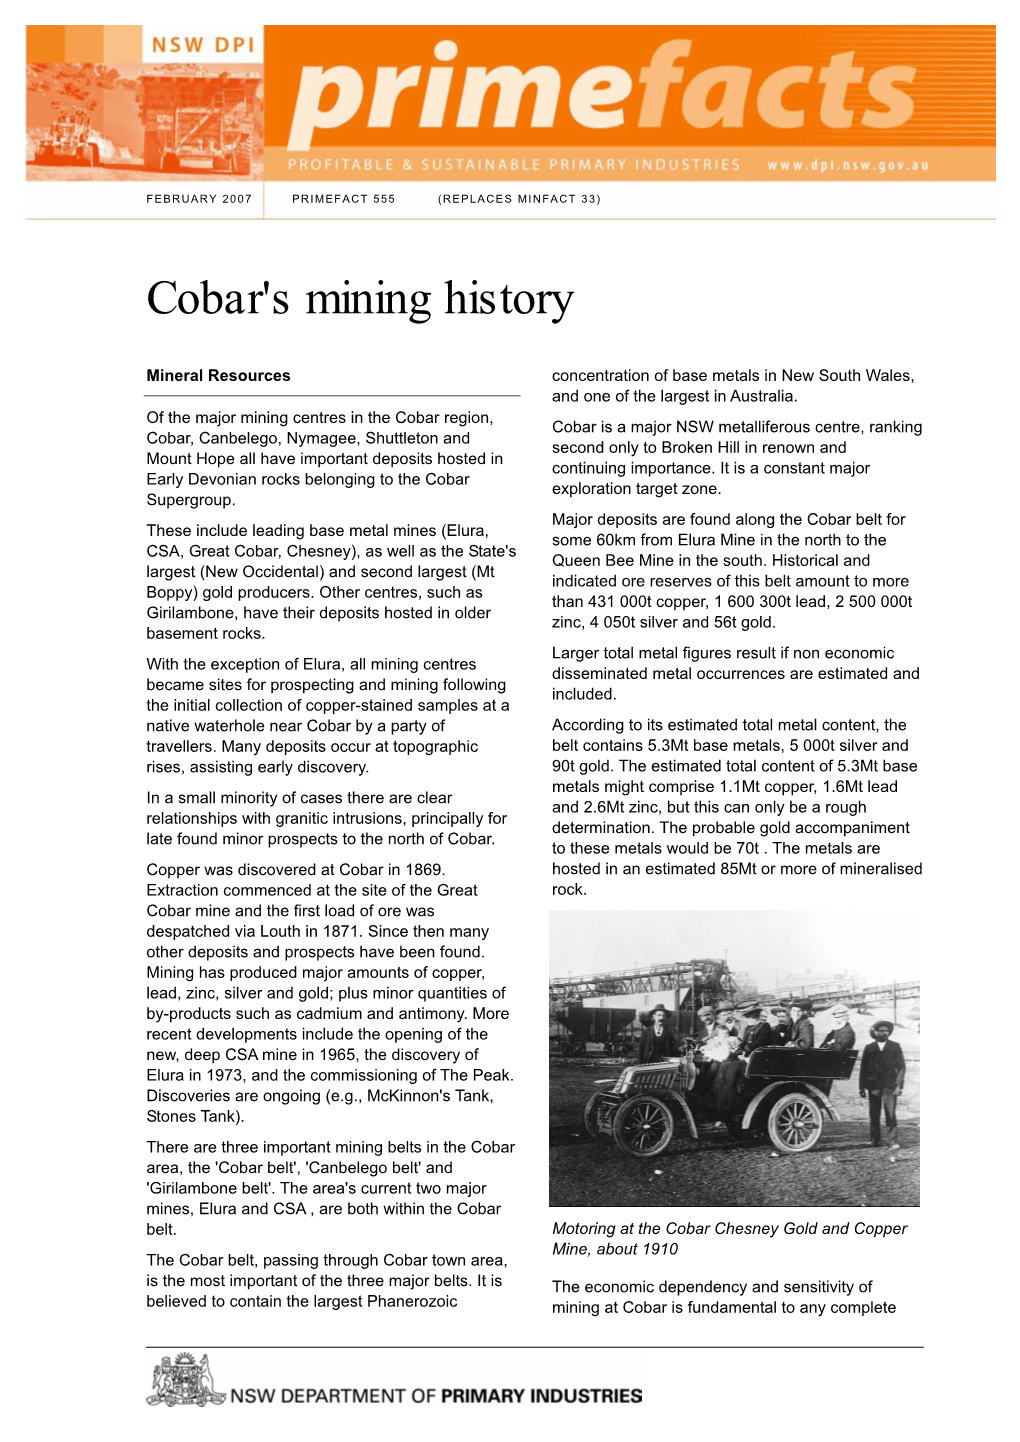 Cobar's Mining History